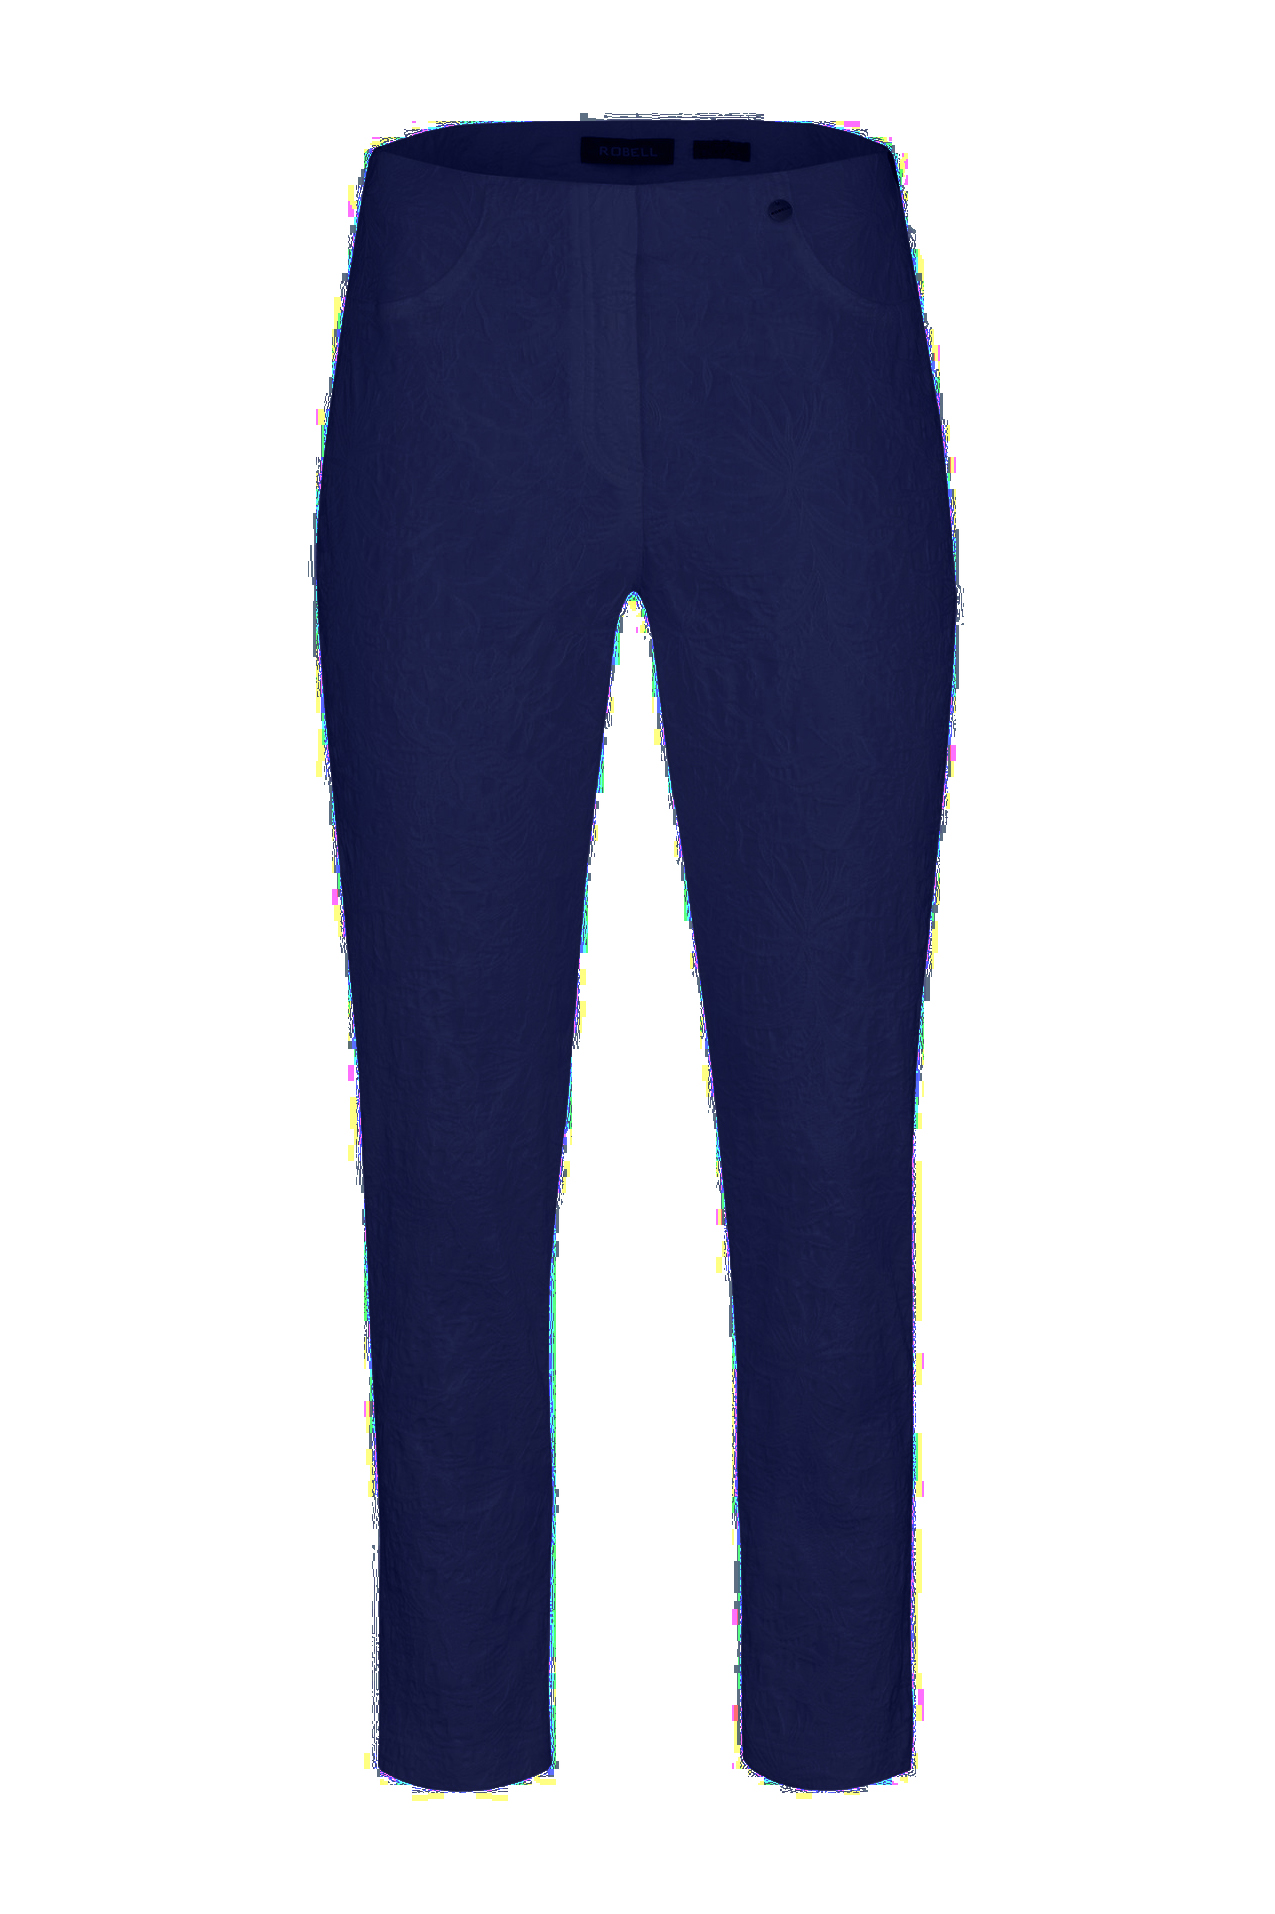 Buy Blue Trousers  Pants for Women by AJIO Online  Ajiocom